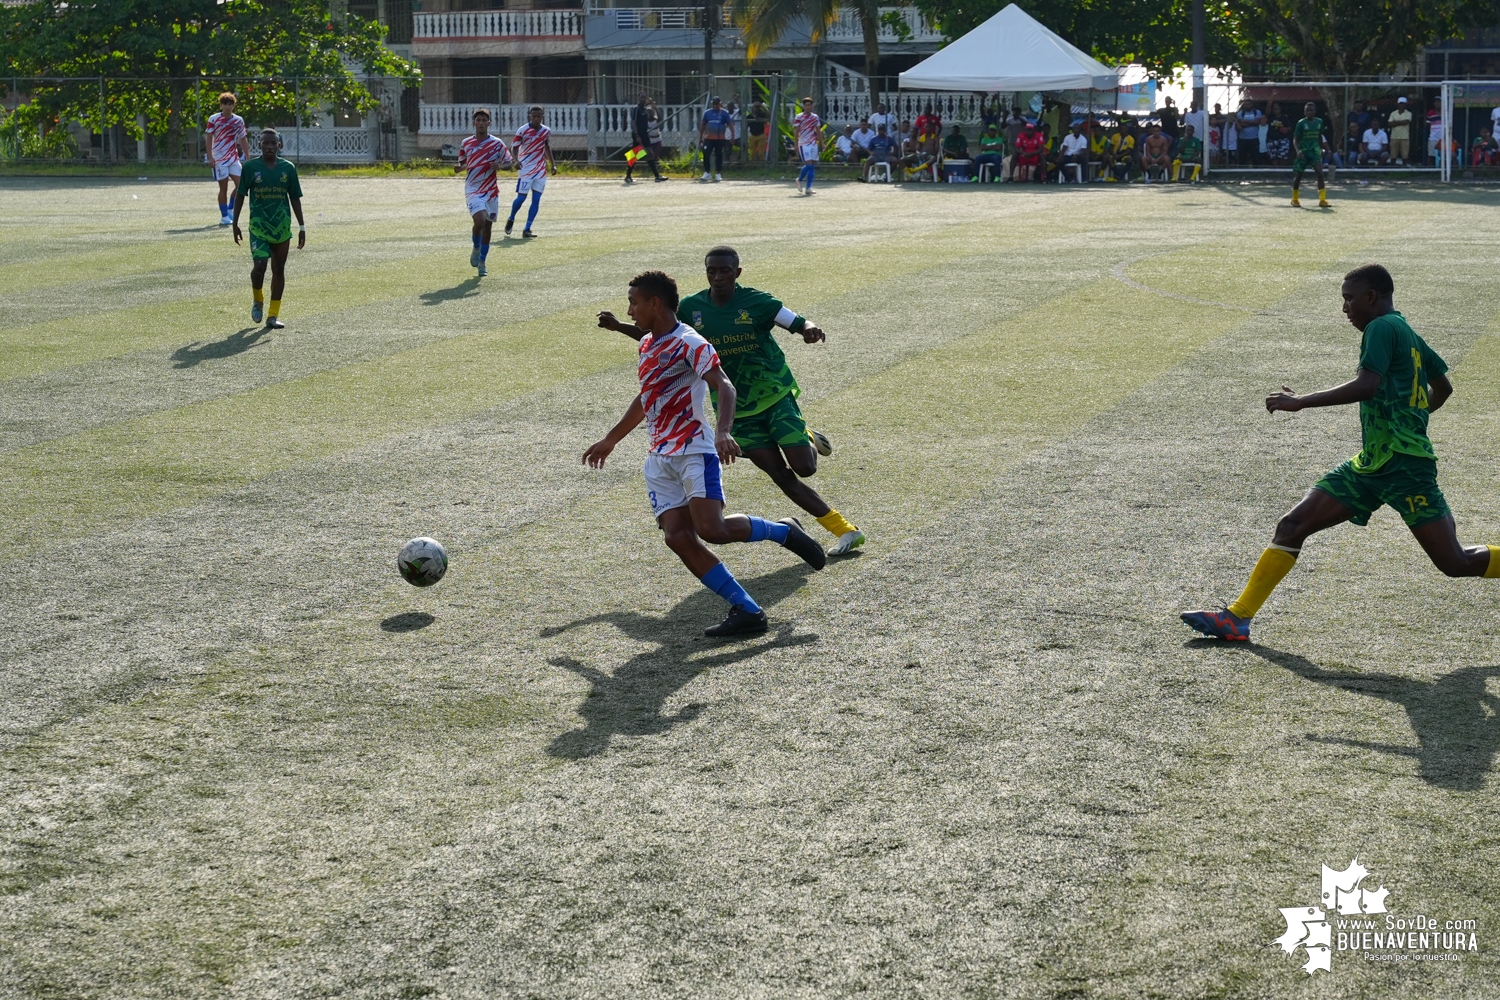 Algo más de 400 personas, asistieron al partido de fútbol internacional Sub-20 entre Buenaventura Vs. Puerto Cabello